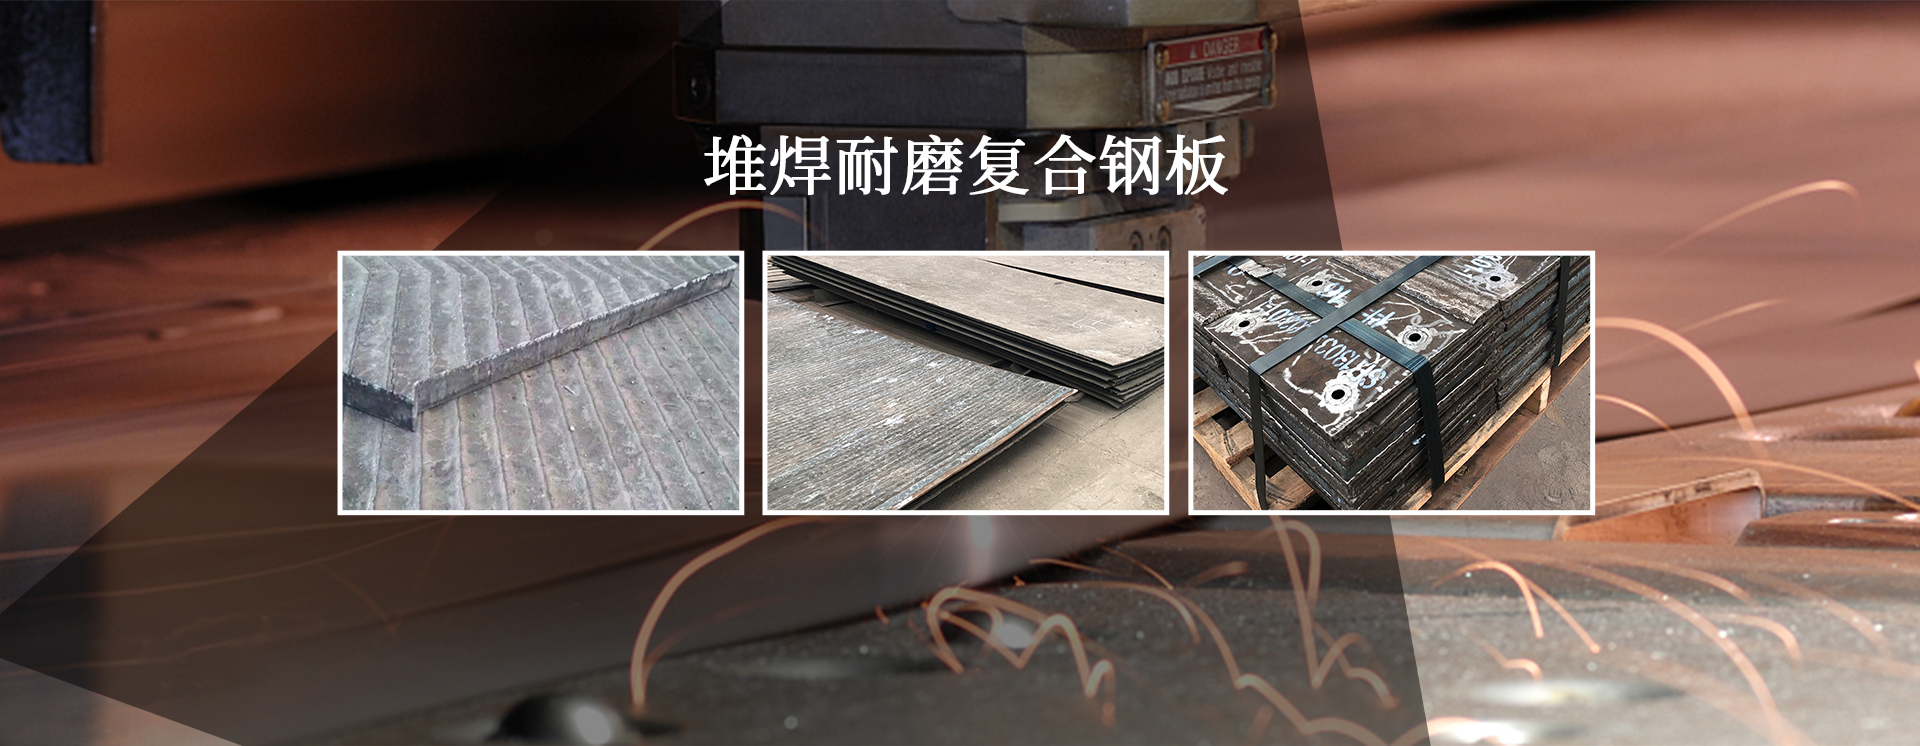 焊接H型钢,堆焊耐磨板,耐磨板厂家